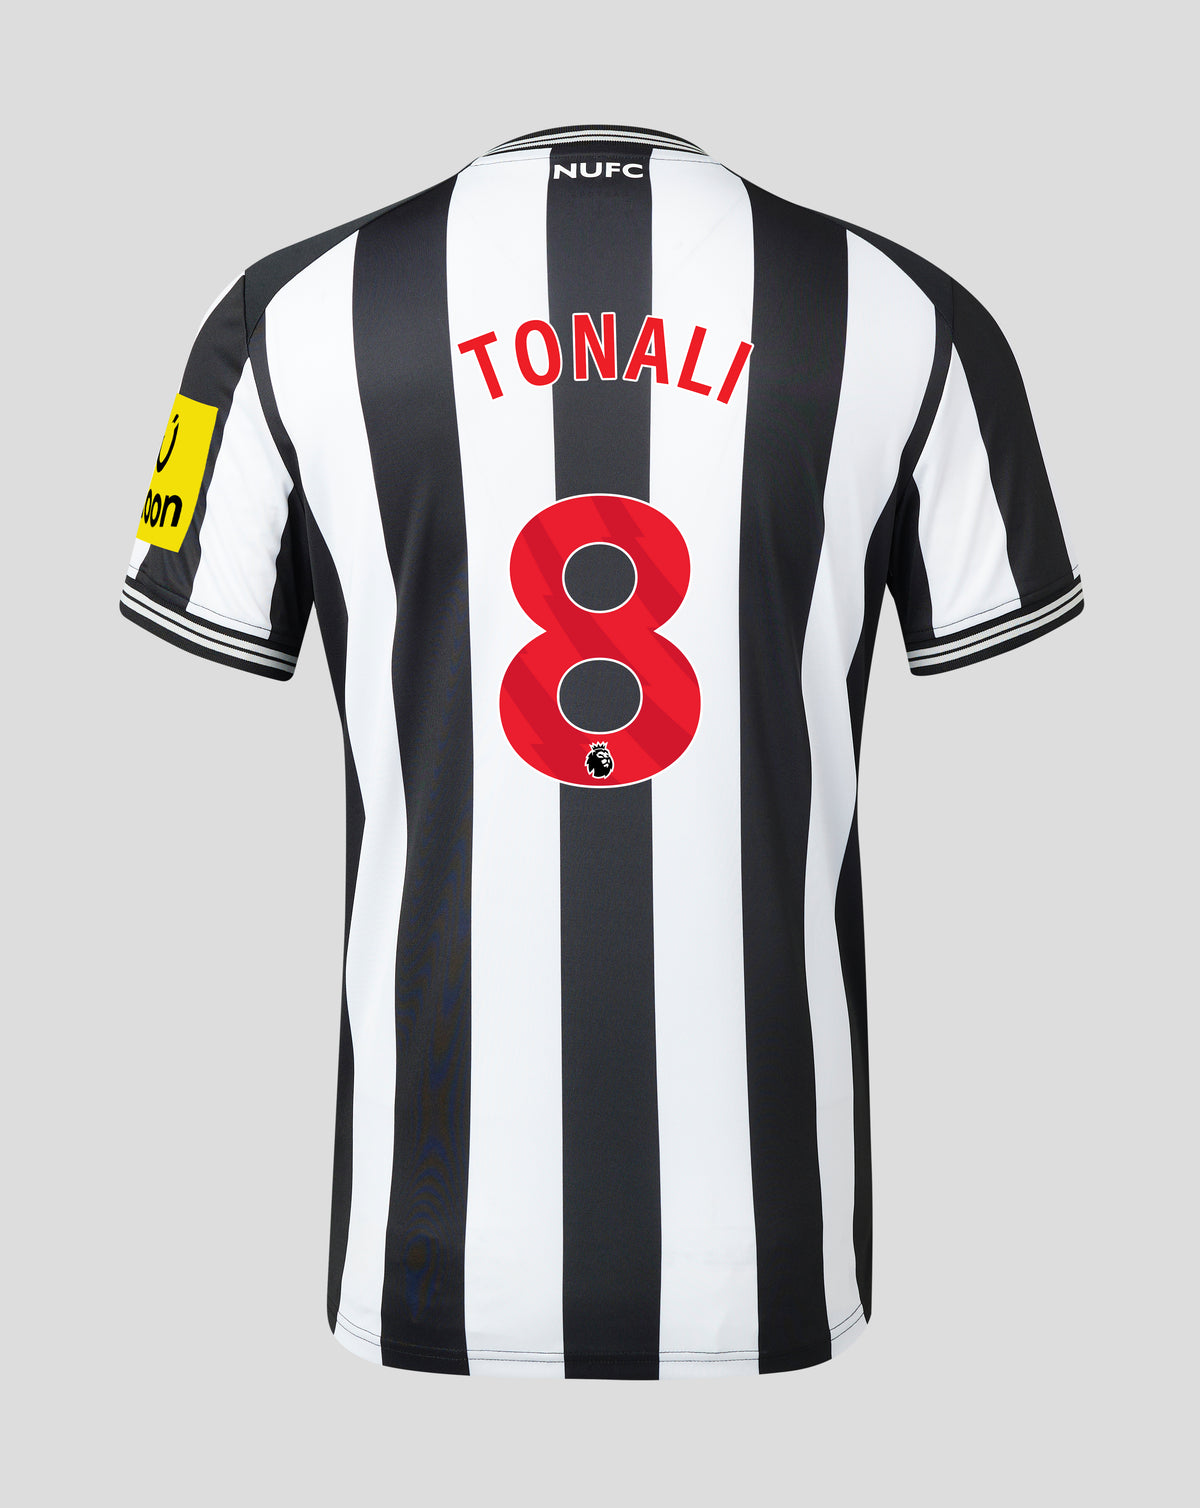 Tonali - Home